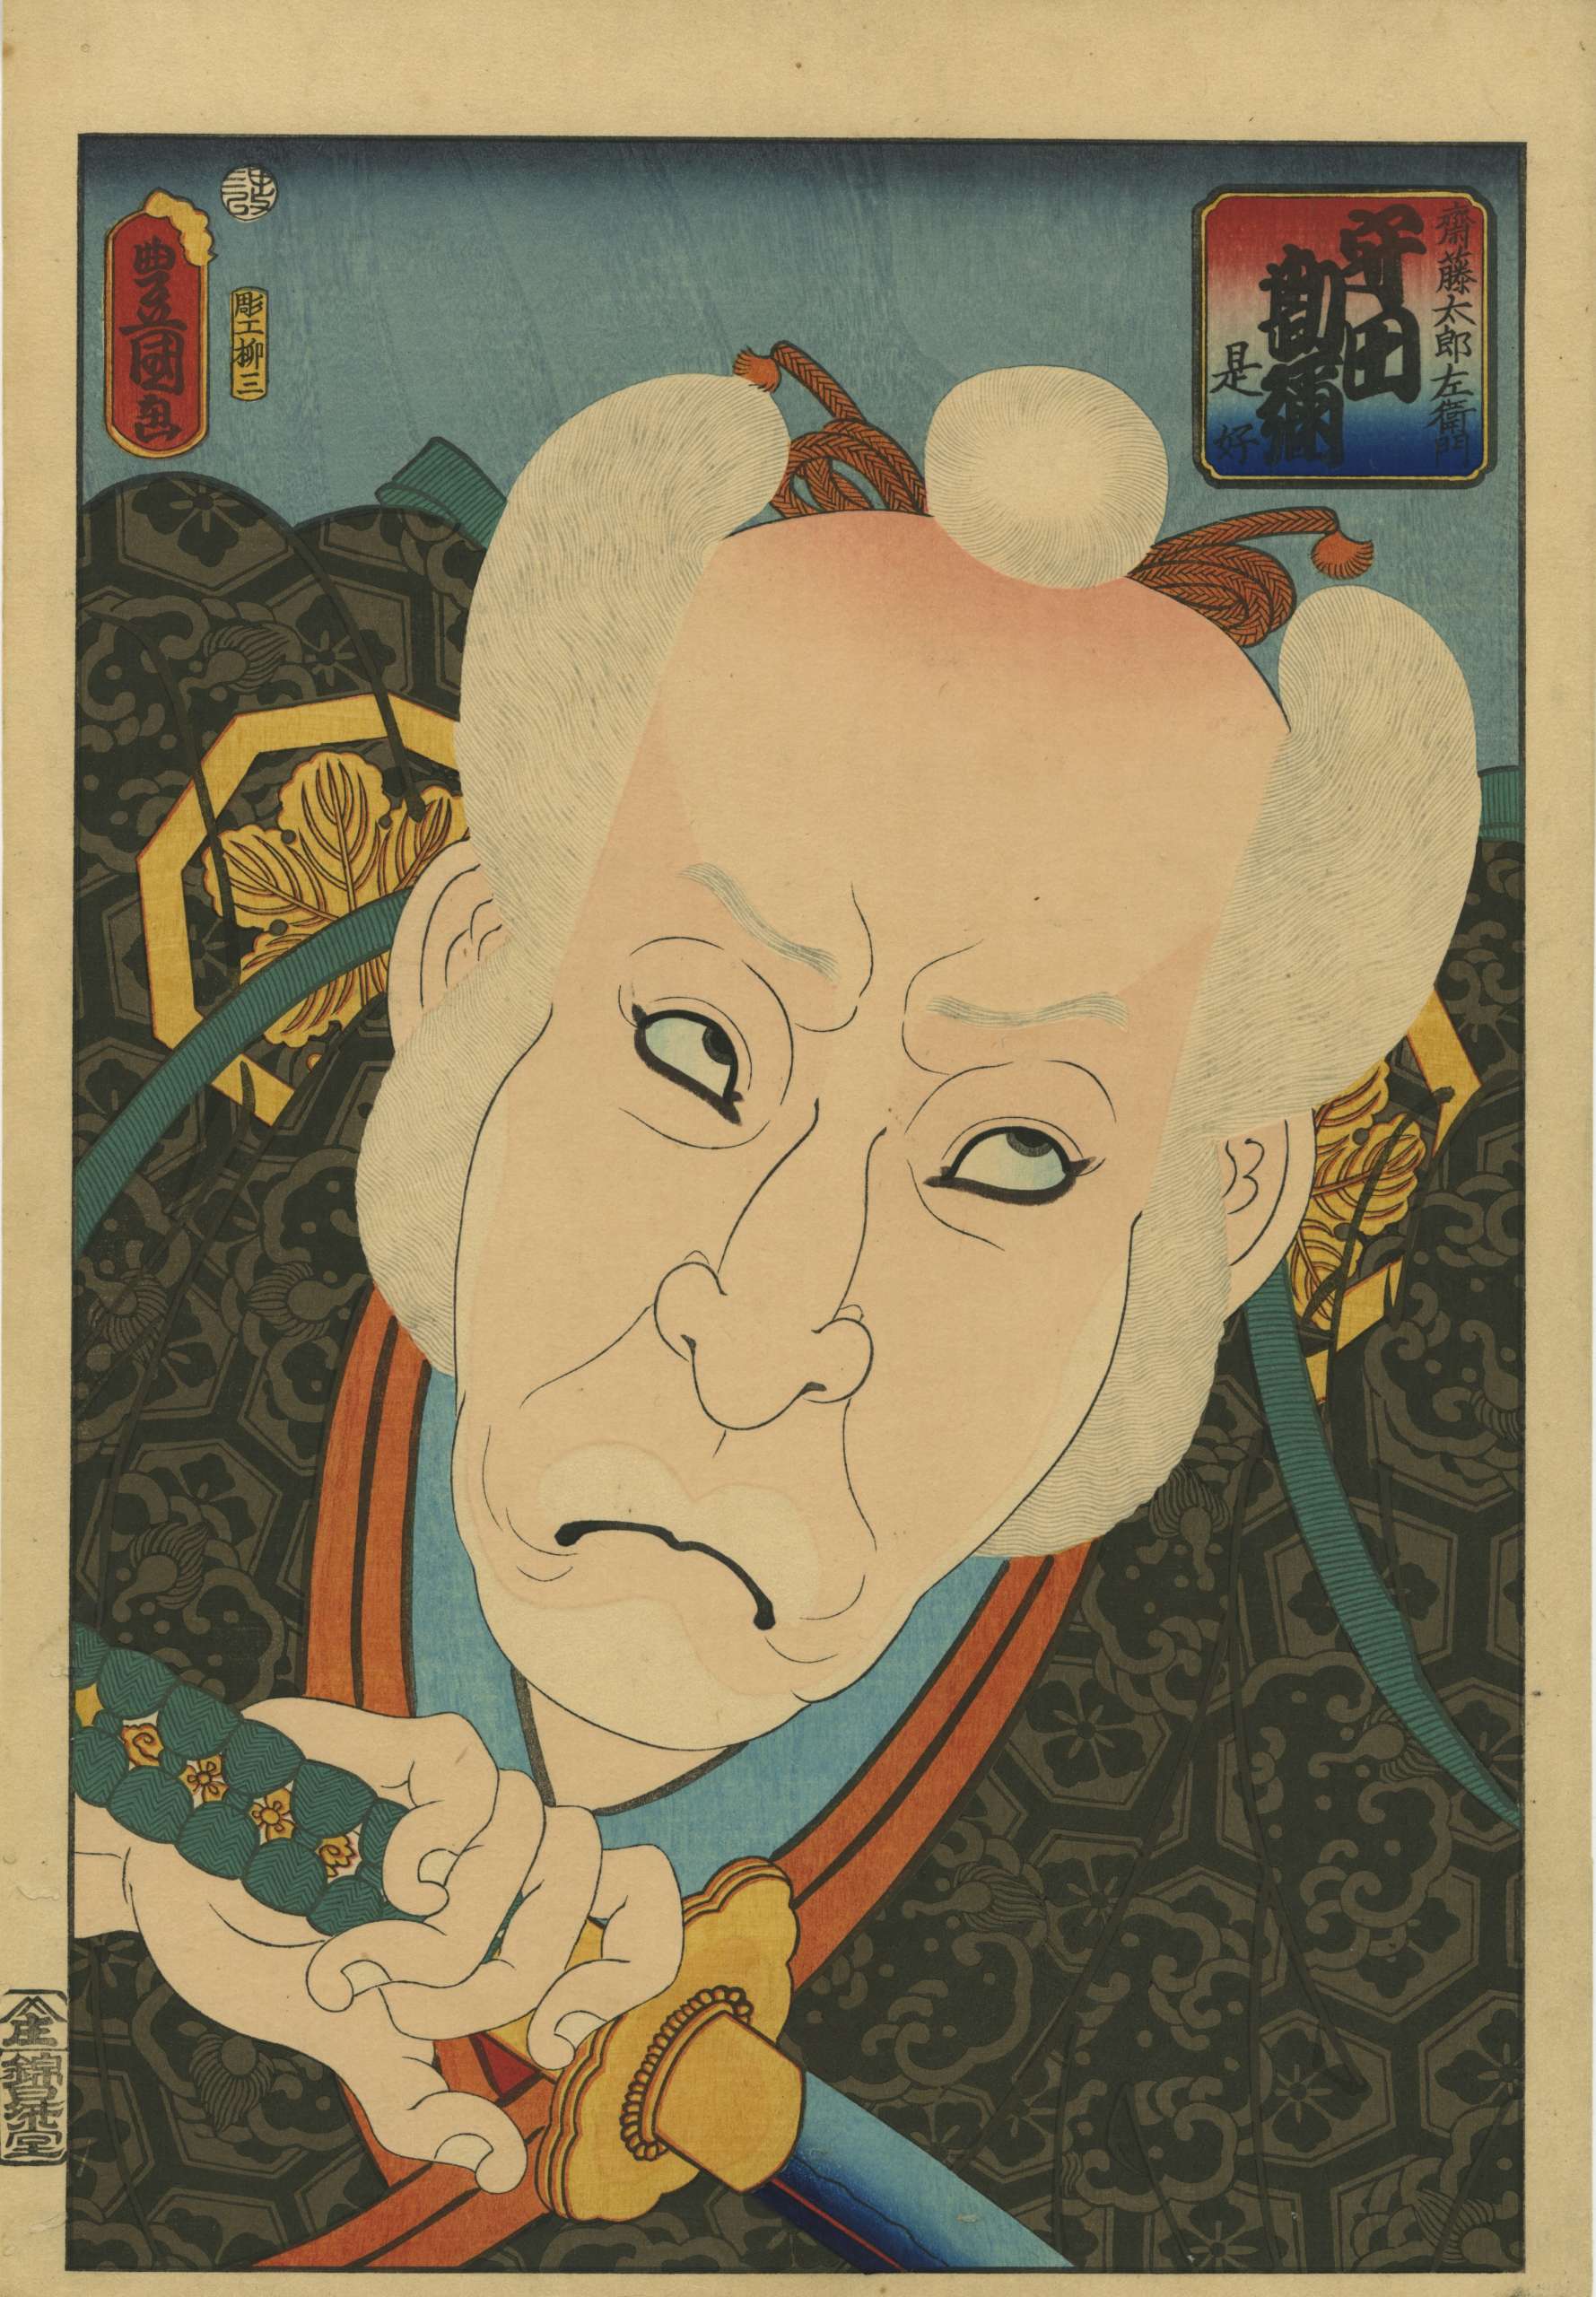 Utagawa Kunisada. Actor Morita Kan'ya XI as Saito Tarozaemon Toshiyuki. 1860.